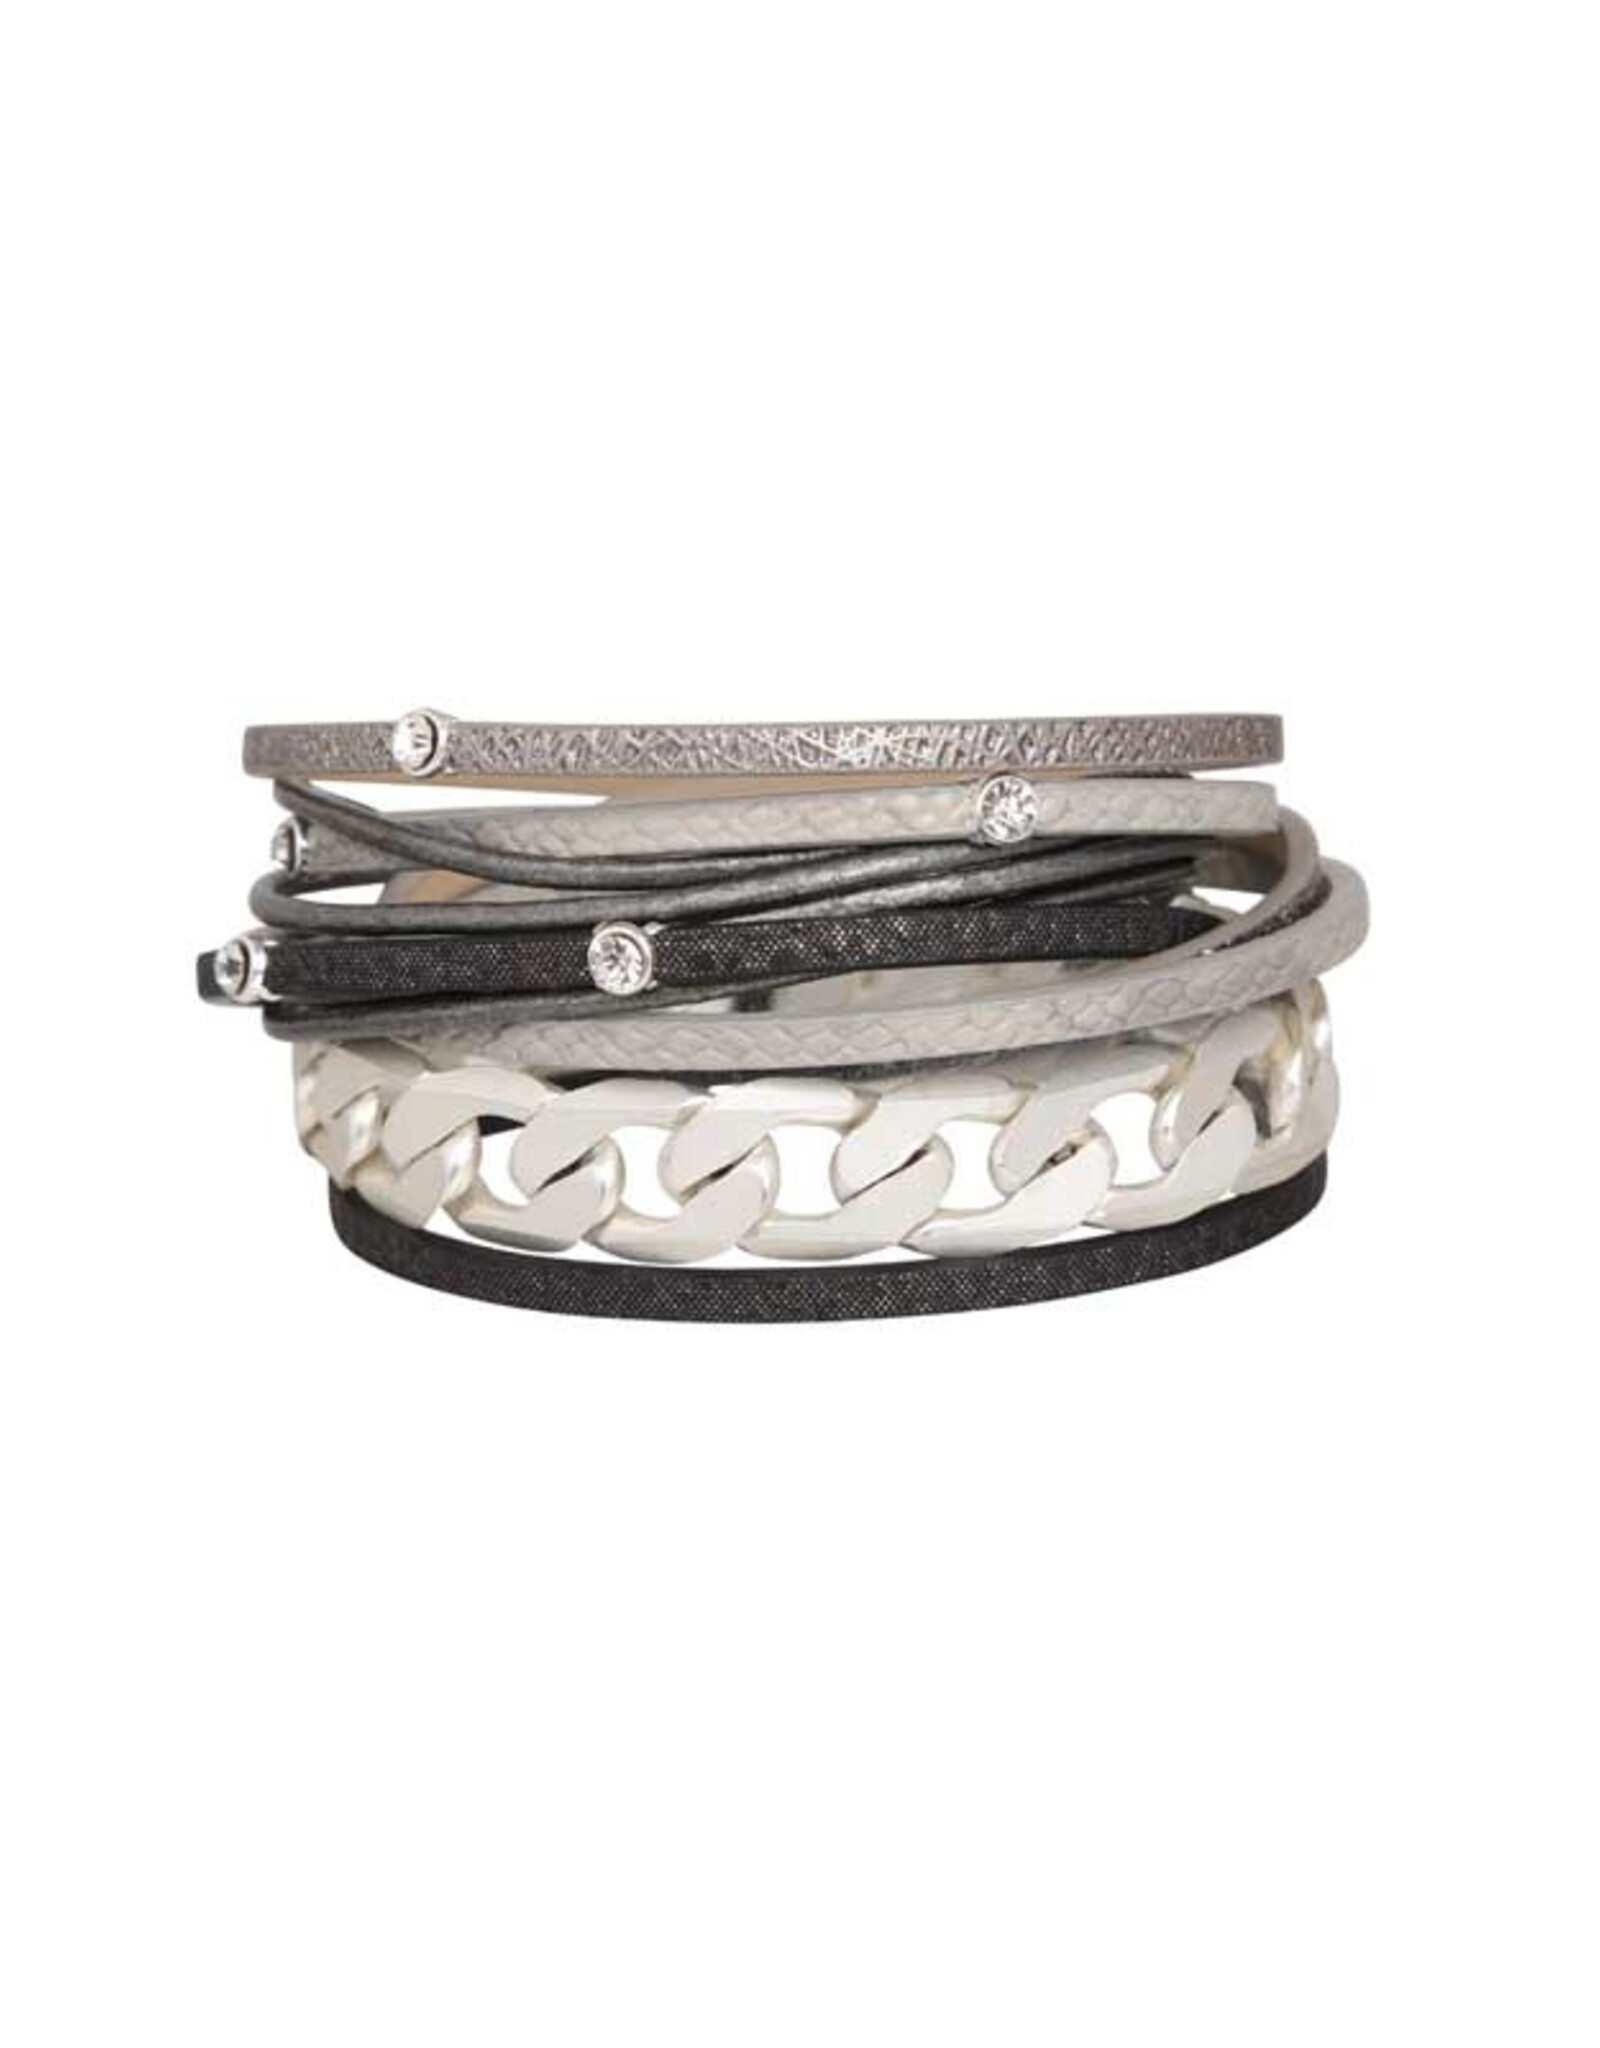 Merx Inc. Fashion Bracelet MS+SS+#39+#501+#502 grey 38cm